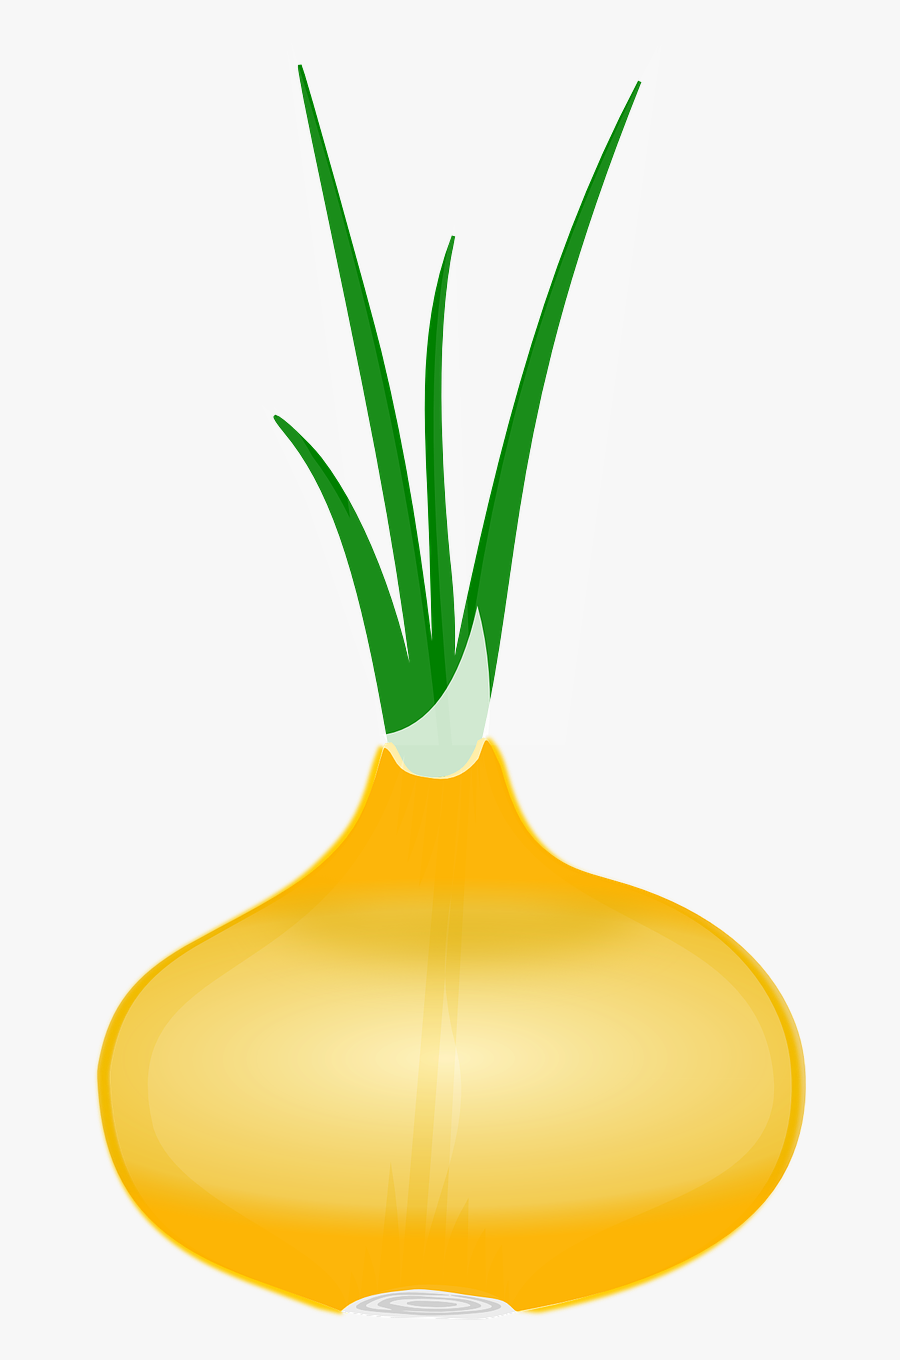 Vegetable Clipart - Onion Clip Art, Transparent Clipart